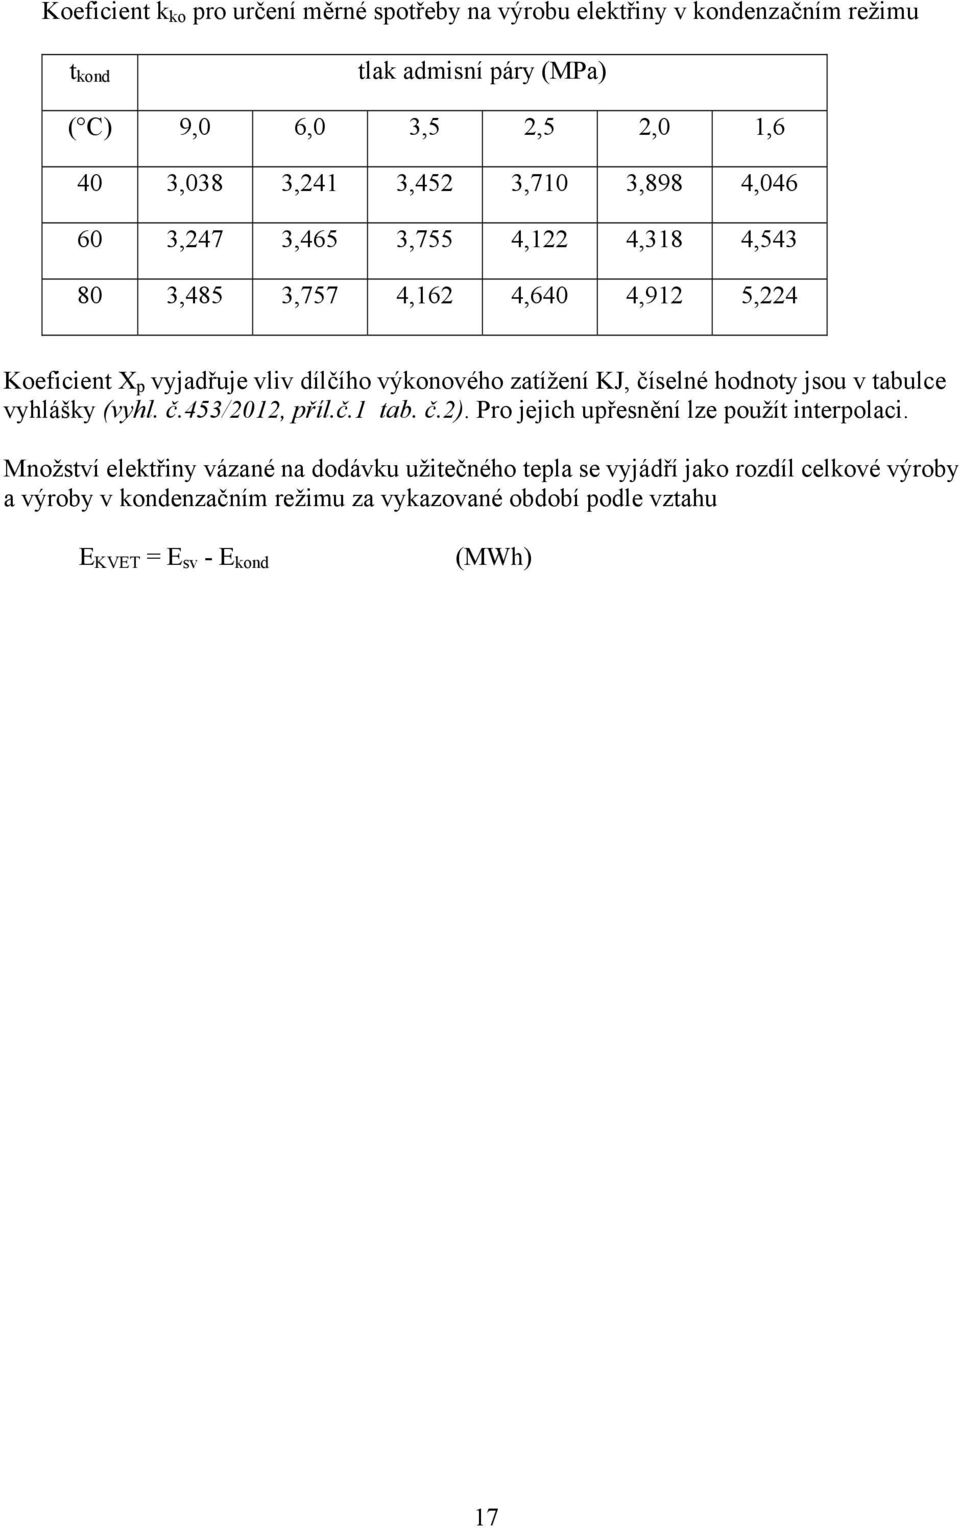 zatížení KJ, číelné hodnoty jou v tabulce vyhlášky (vyhl. č.453/2012, příl.č.1 tab. č.2). Pro jejich upřenění lze použít interpolaci.